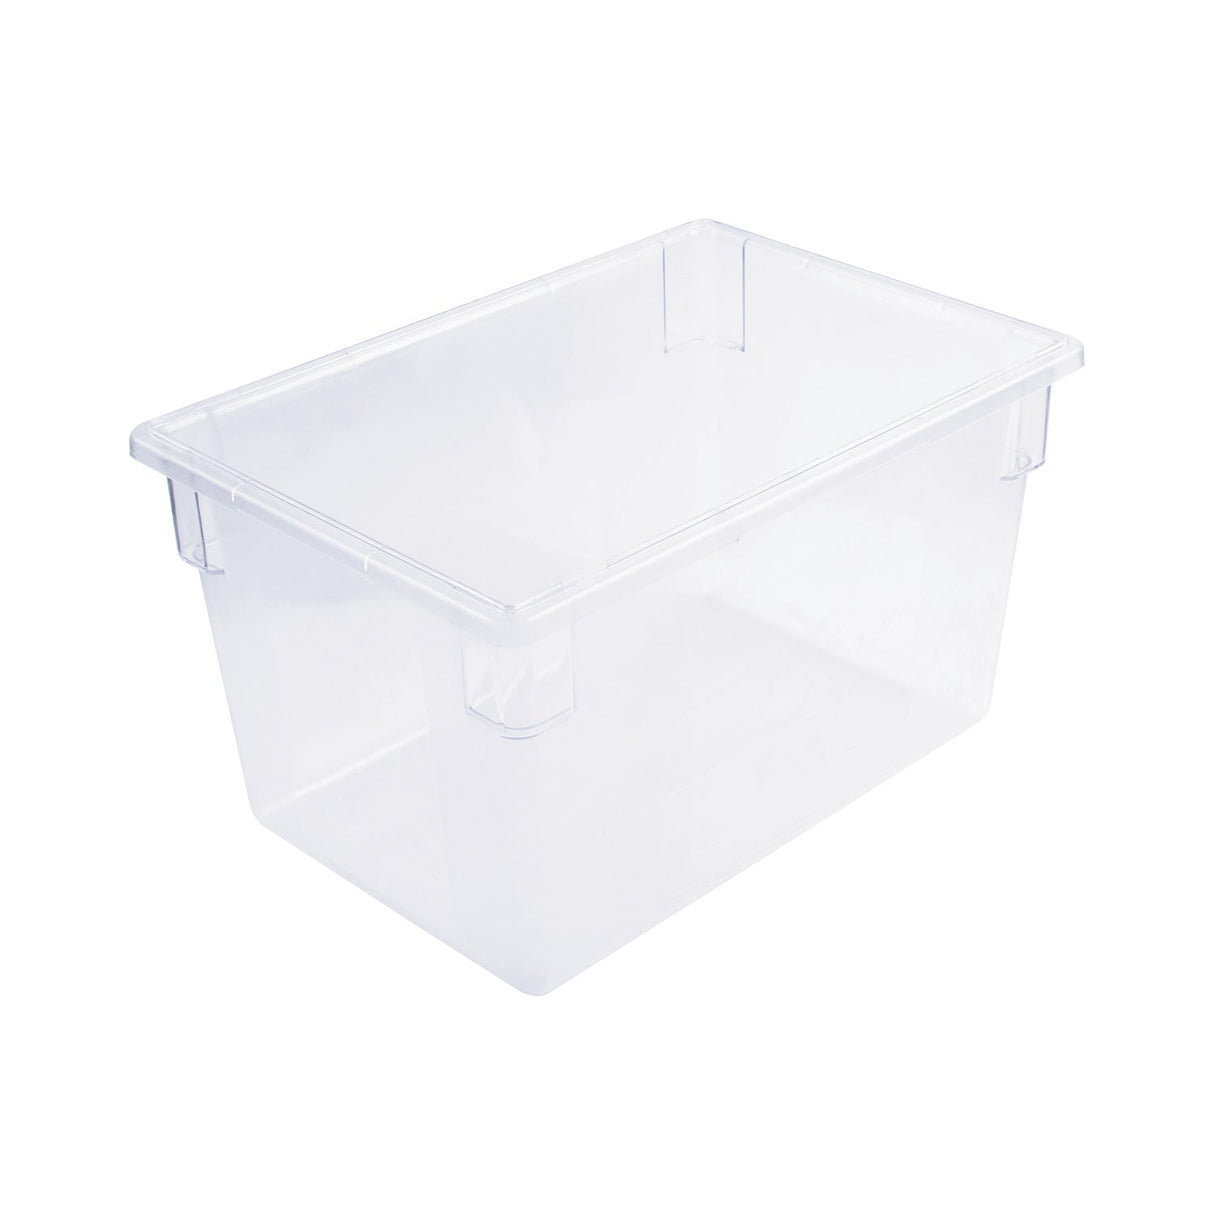 Food Storage Box PC Full Size Clear 26x18x15"